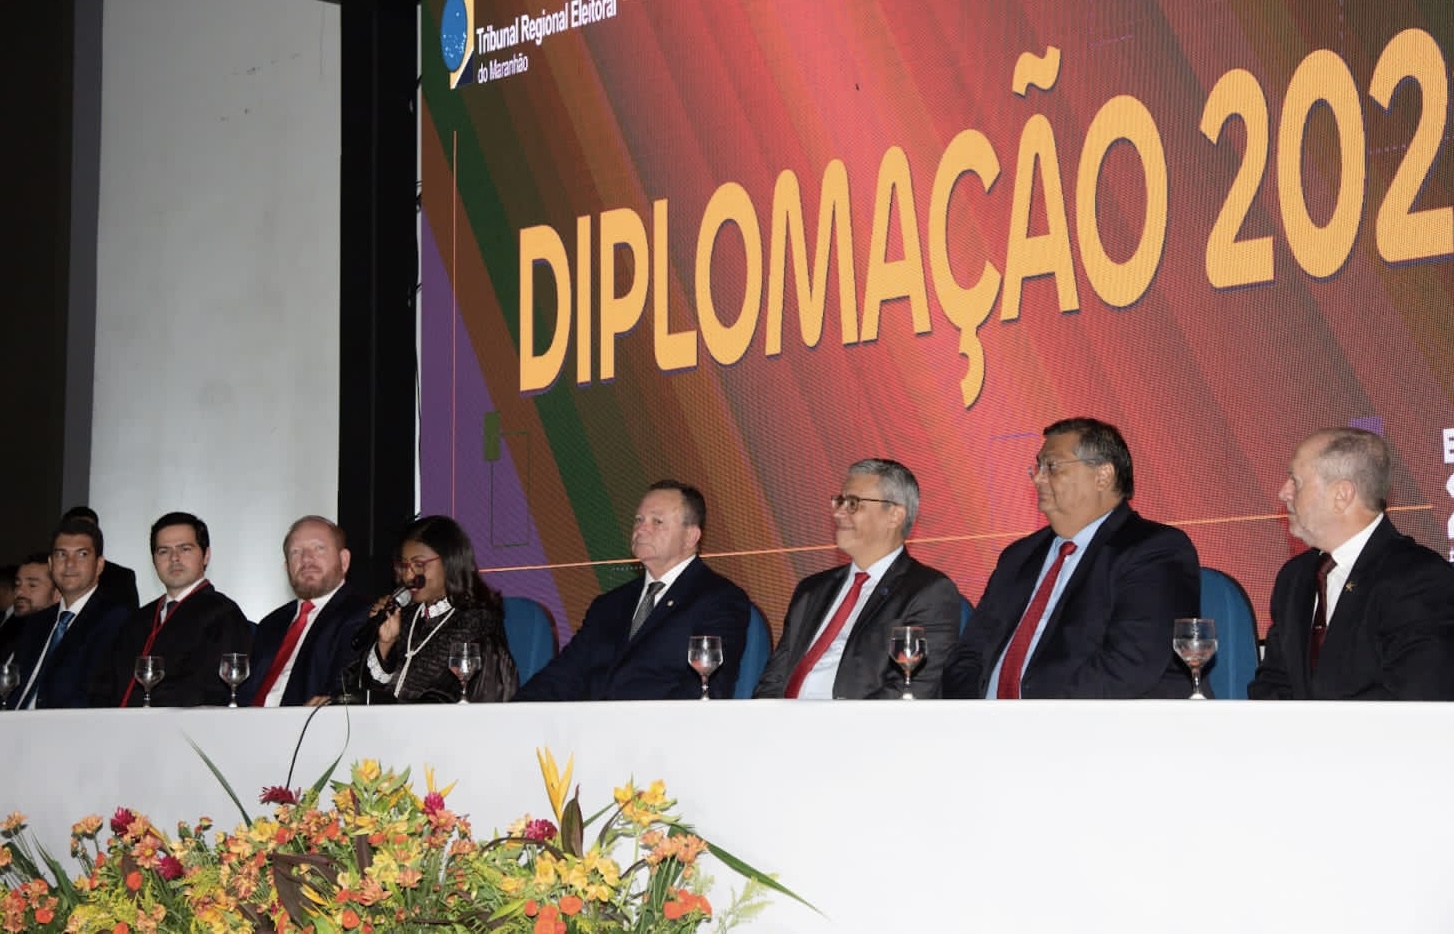 Flávio Dino se distancia de Brandão em cerimônia de diplomação.